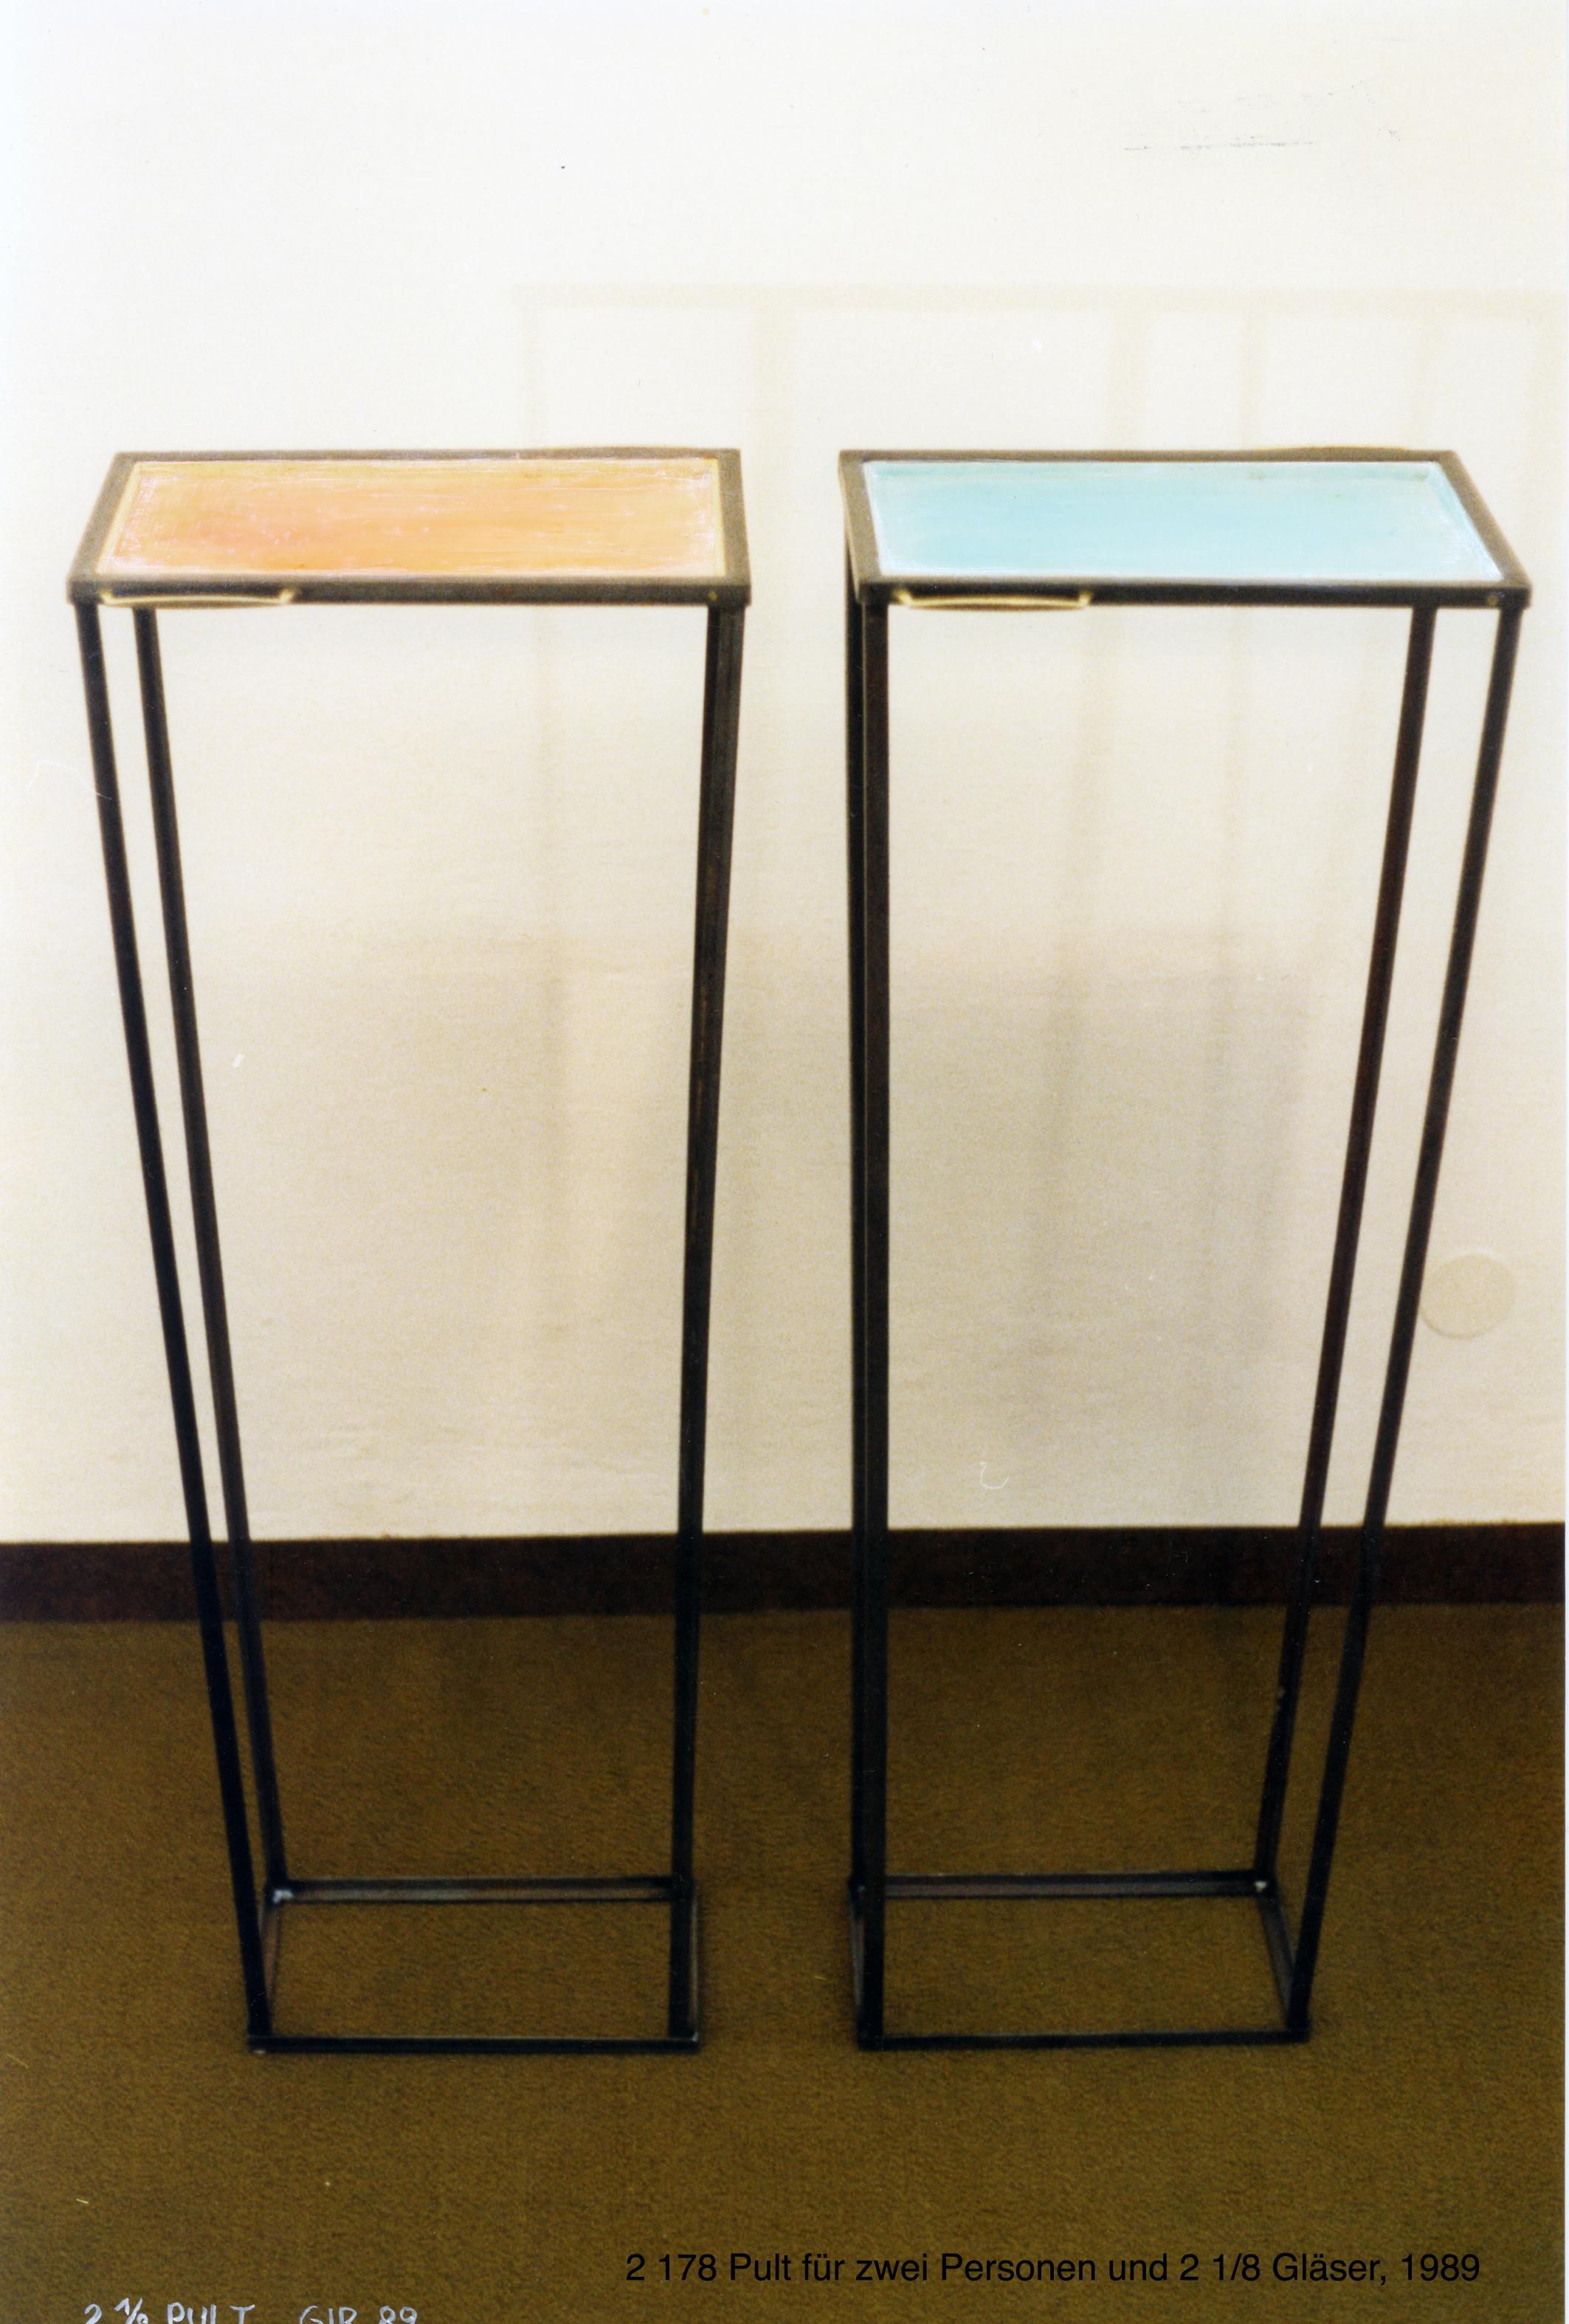 Für zwei Personen (Griffe) und zwei Achtelgläser, Eisen, Messing, Resopal, Holz, Farbe, 121 x 41,5 x 30 cm, in Serie